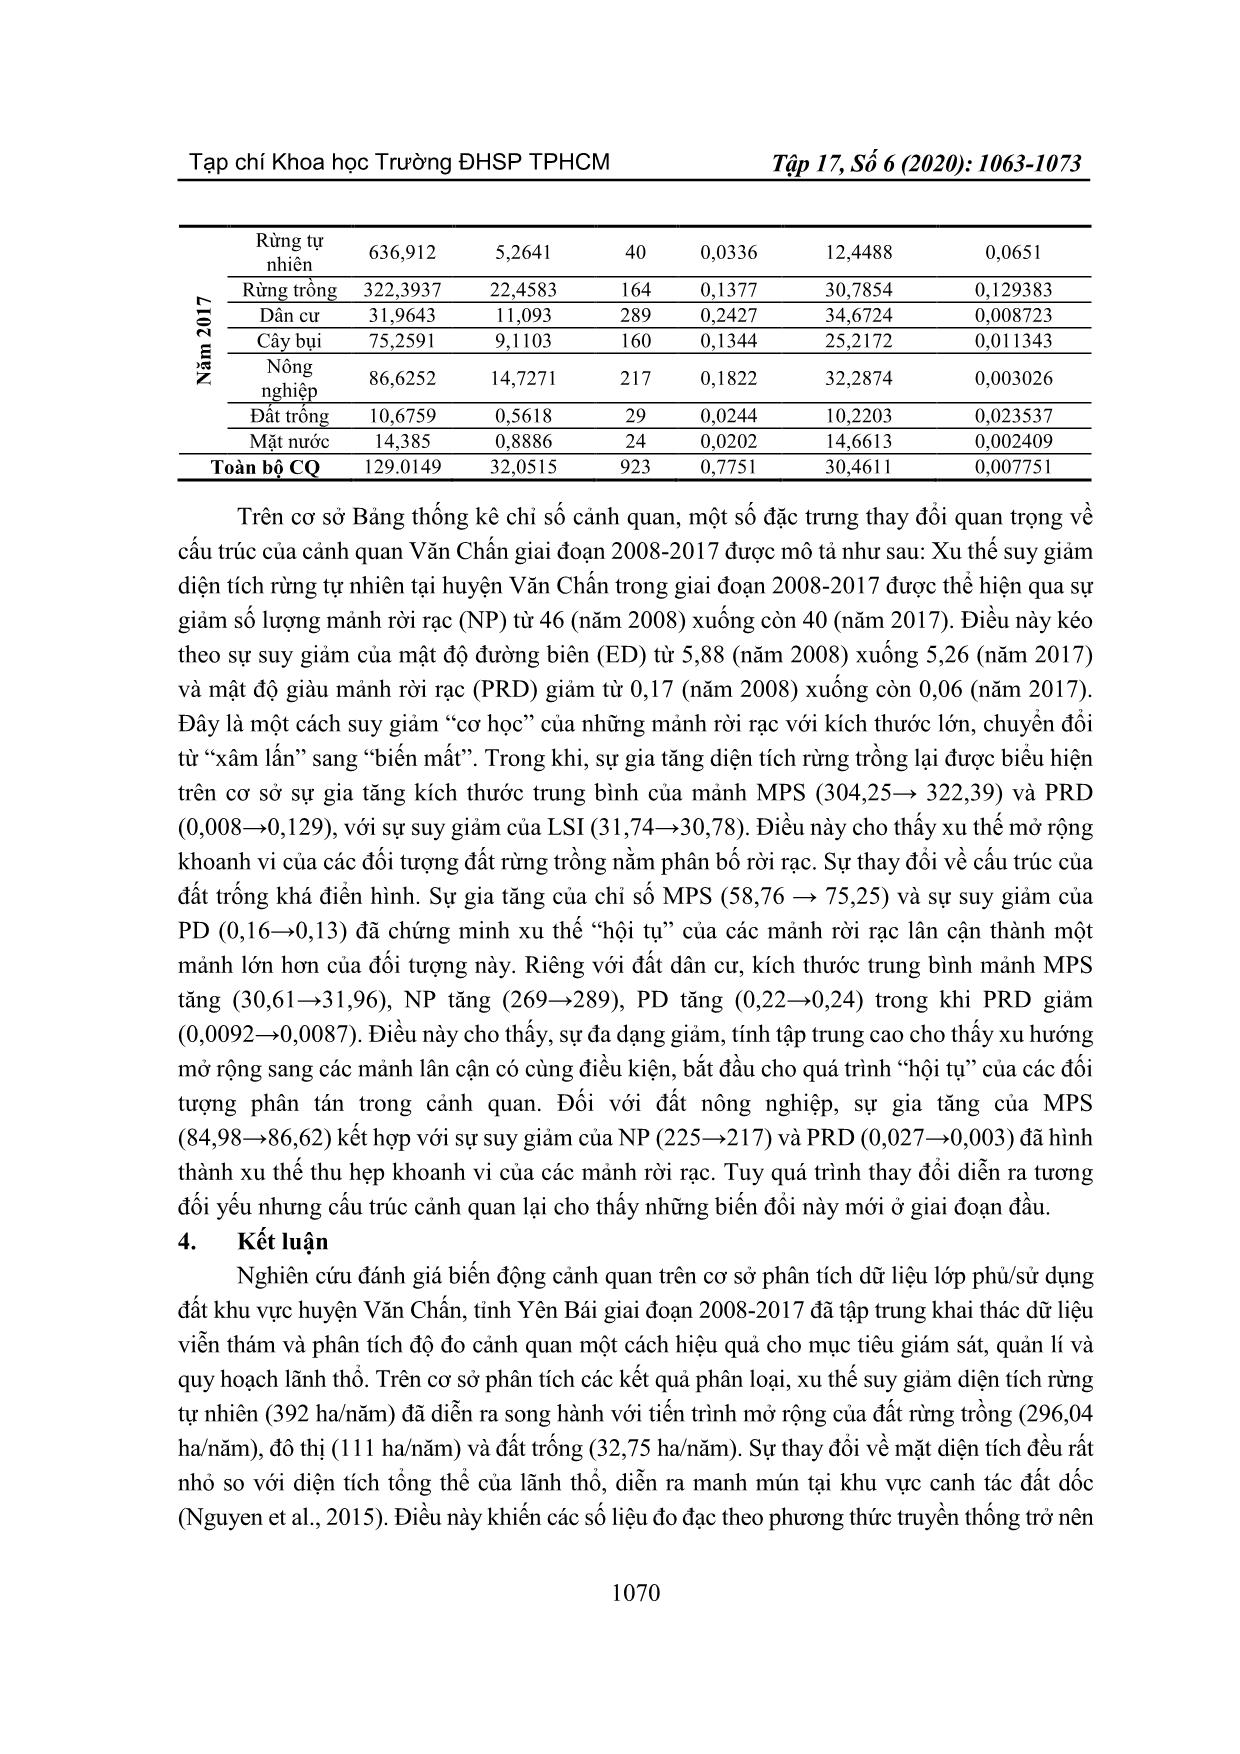 Ứng dụng viễn thám và độ đo cảnh quan trong phân tích xu thế biến động sử dụng đất khu vực huyện Văn Chấn, tỉnh Yên Bái giai đoạn 2008-2017 trang 8